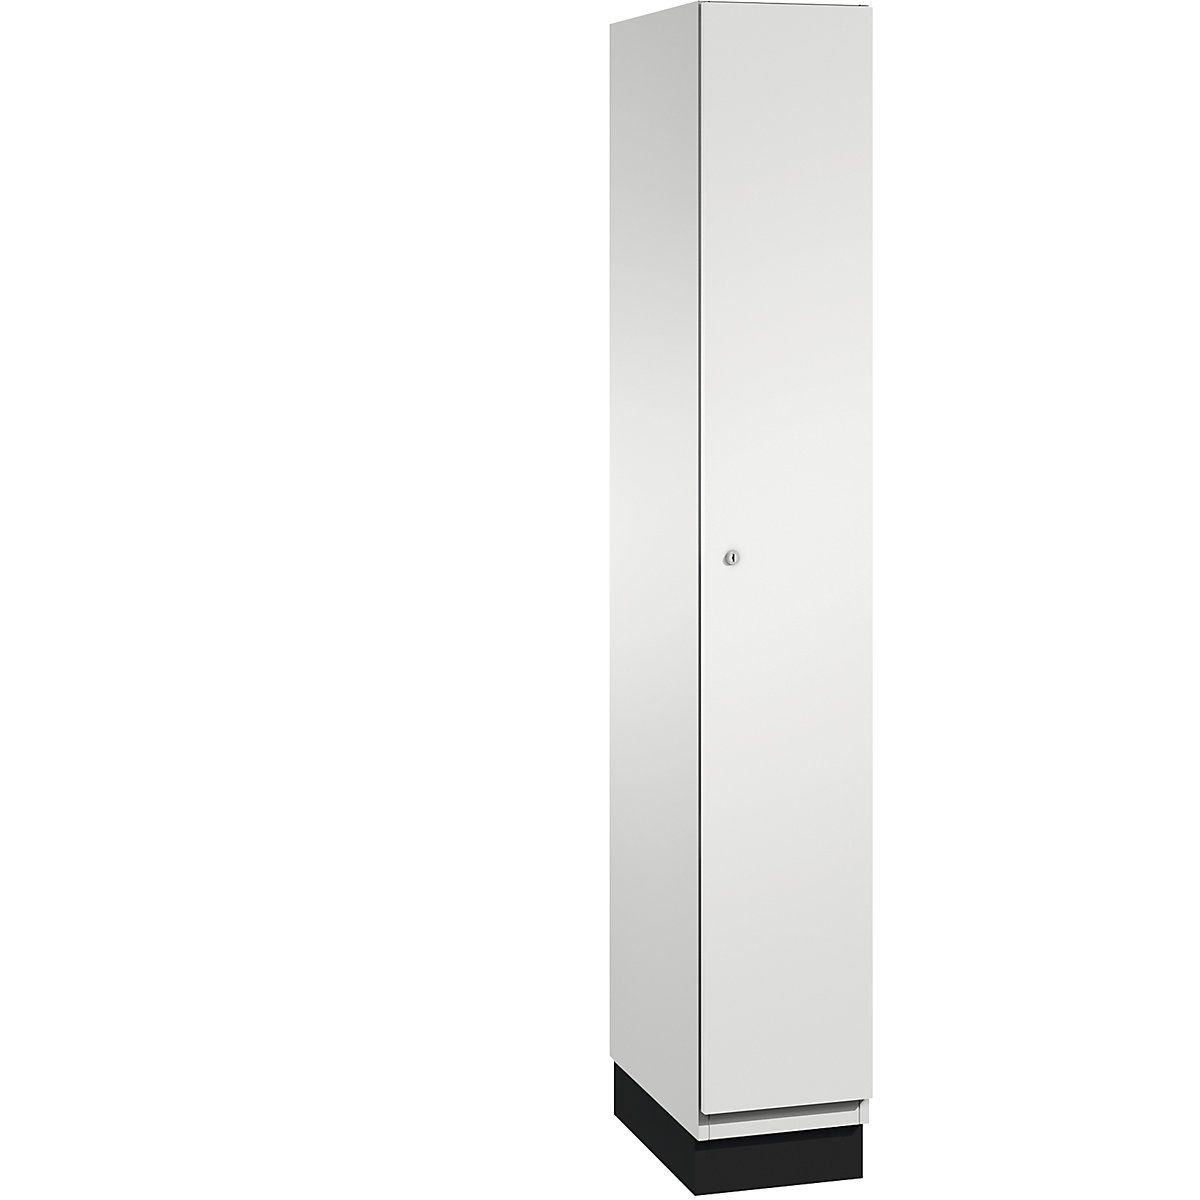 CAMBIO cloakroom locker with sheet steel doors - C+P